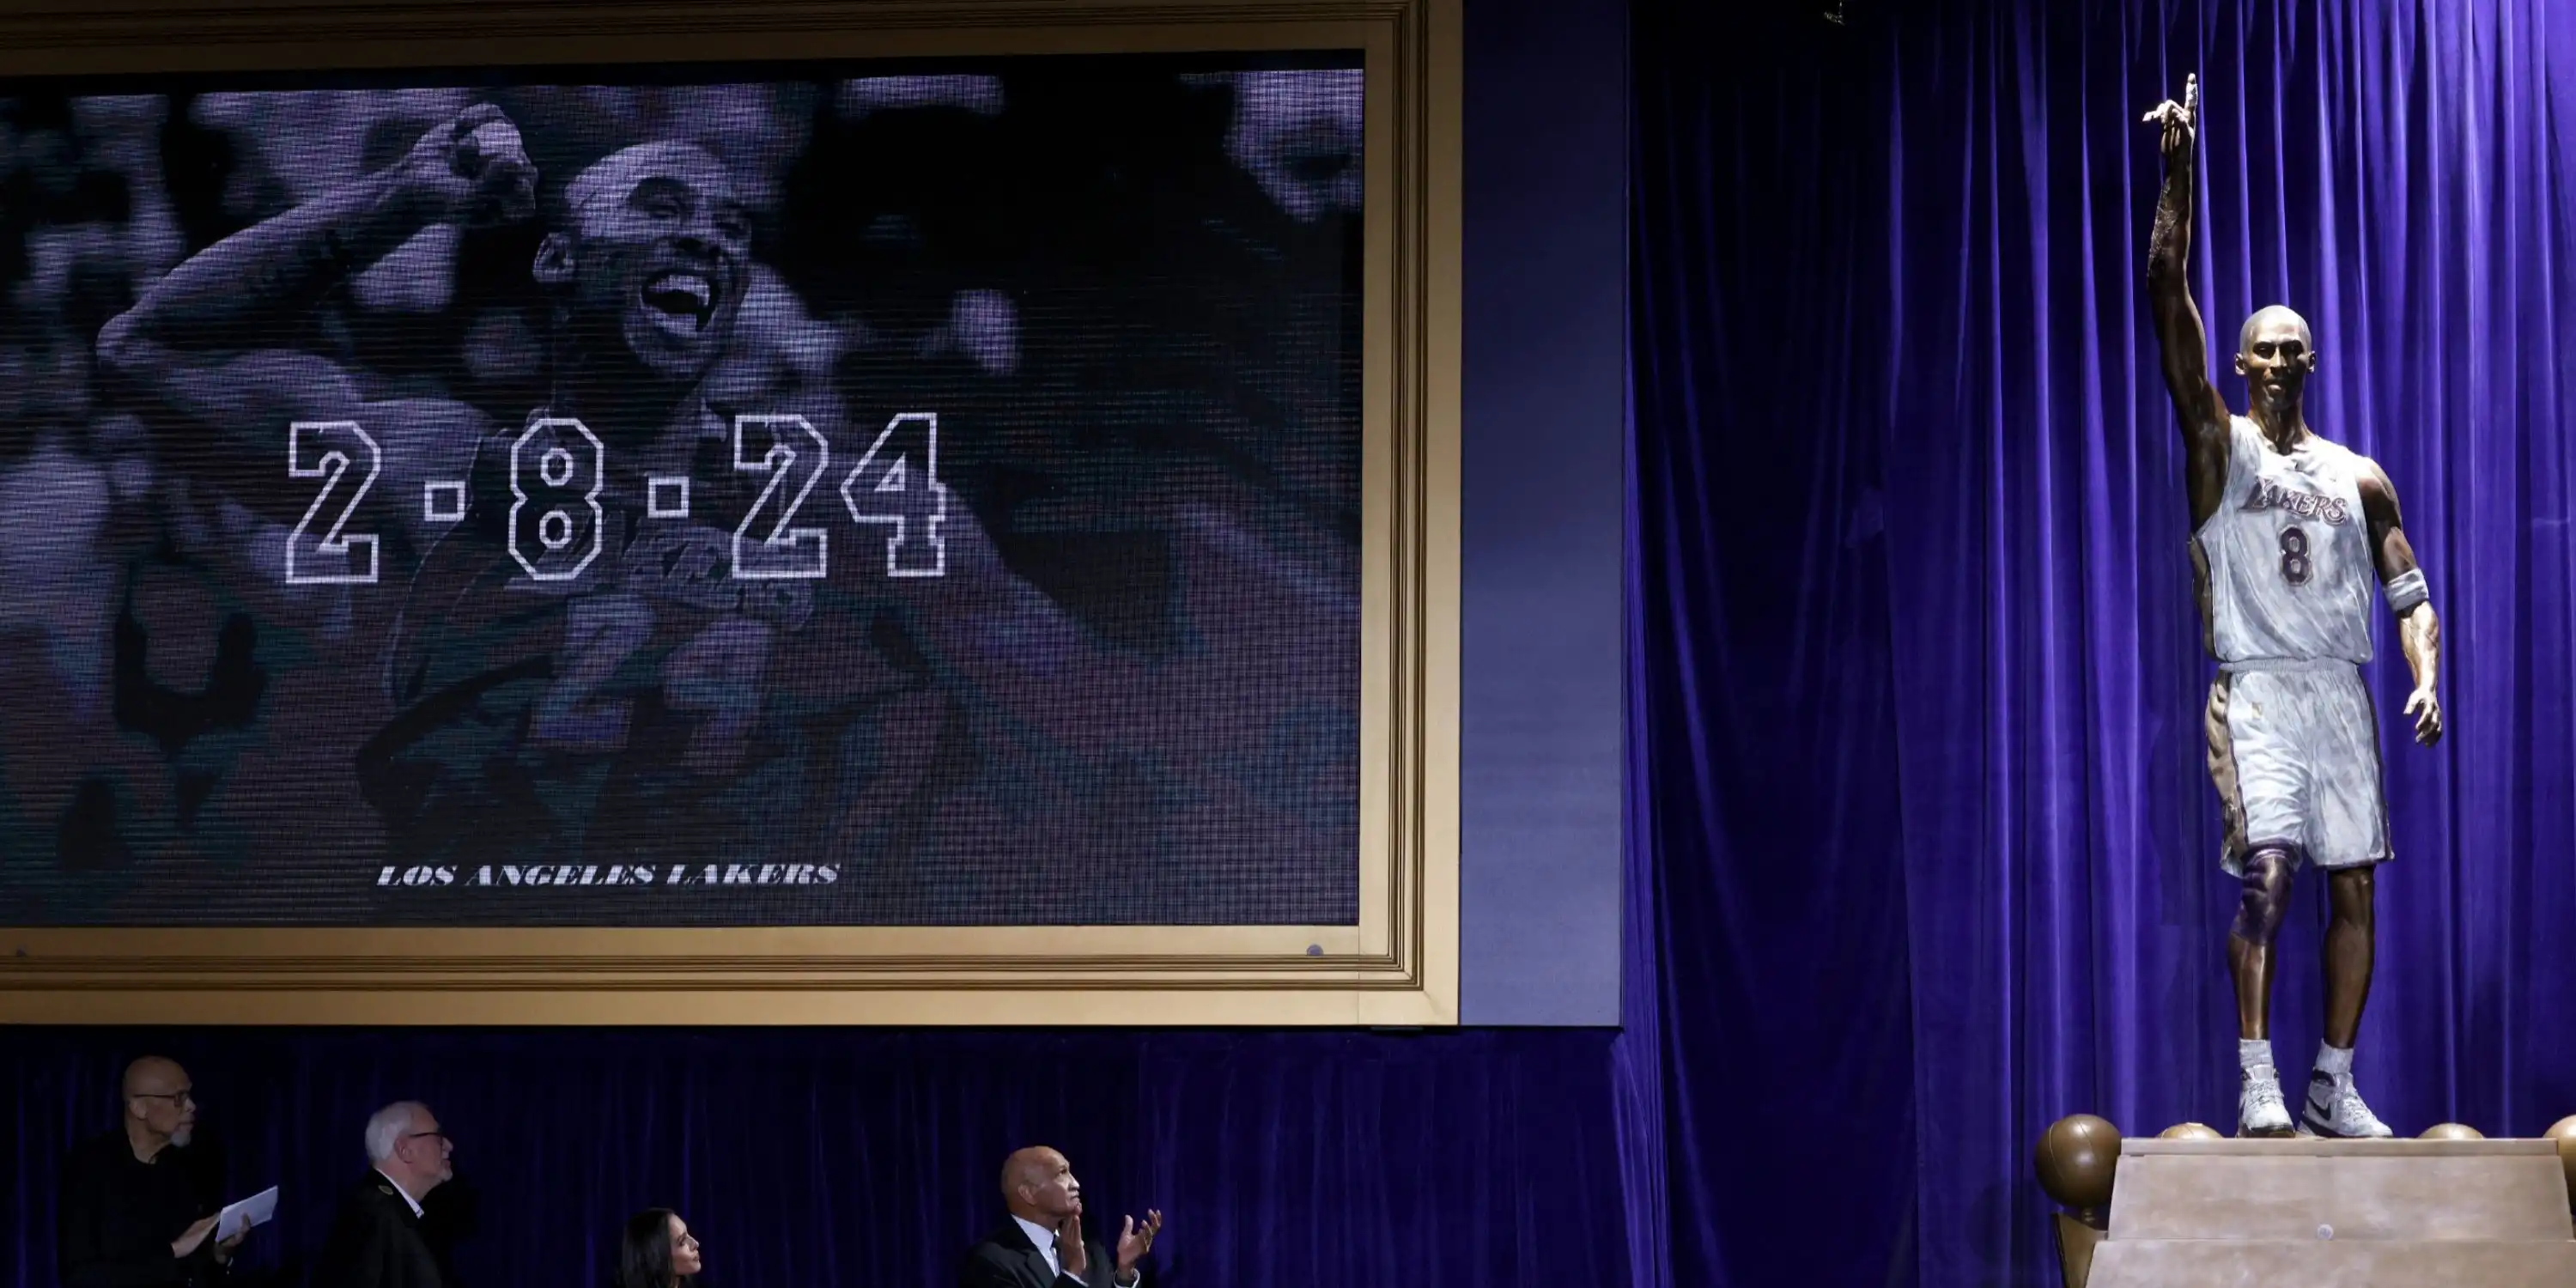 Los Lakers se equivocan con la estatua de Kobe Bryant, un error costoso